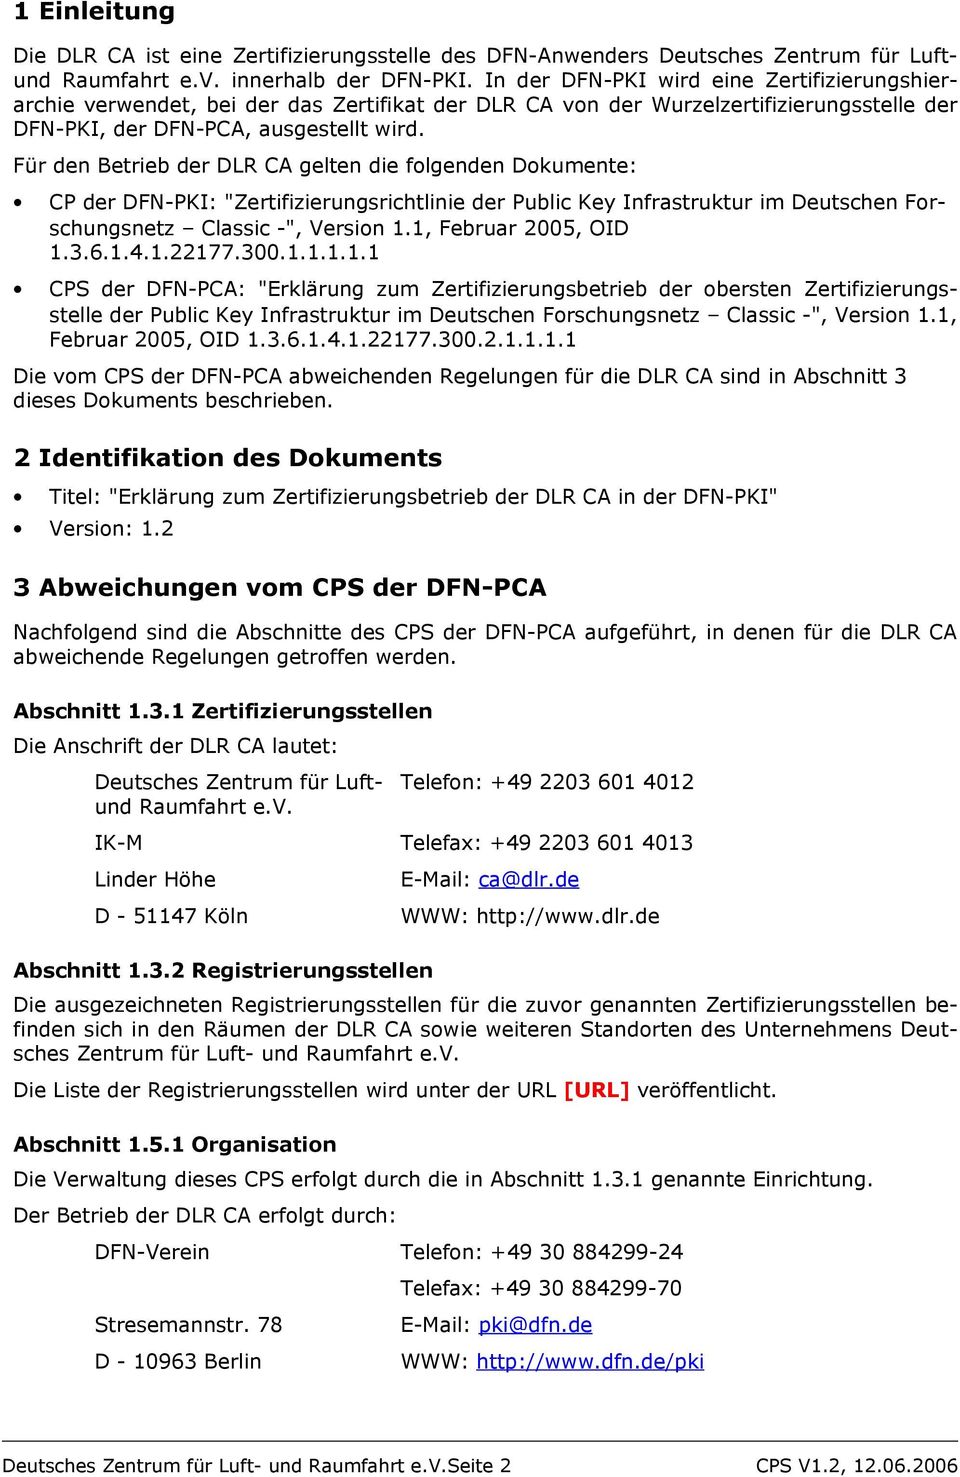 Für den Betrieb der DLR CA gelten die folgenden Dokumente: CP der DFN-PKI: "Zertifizierungsrichtlinie der Public Key Infrastruktur im Deutschen Forschungsnetz Classic -", Version 1.